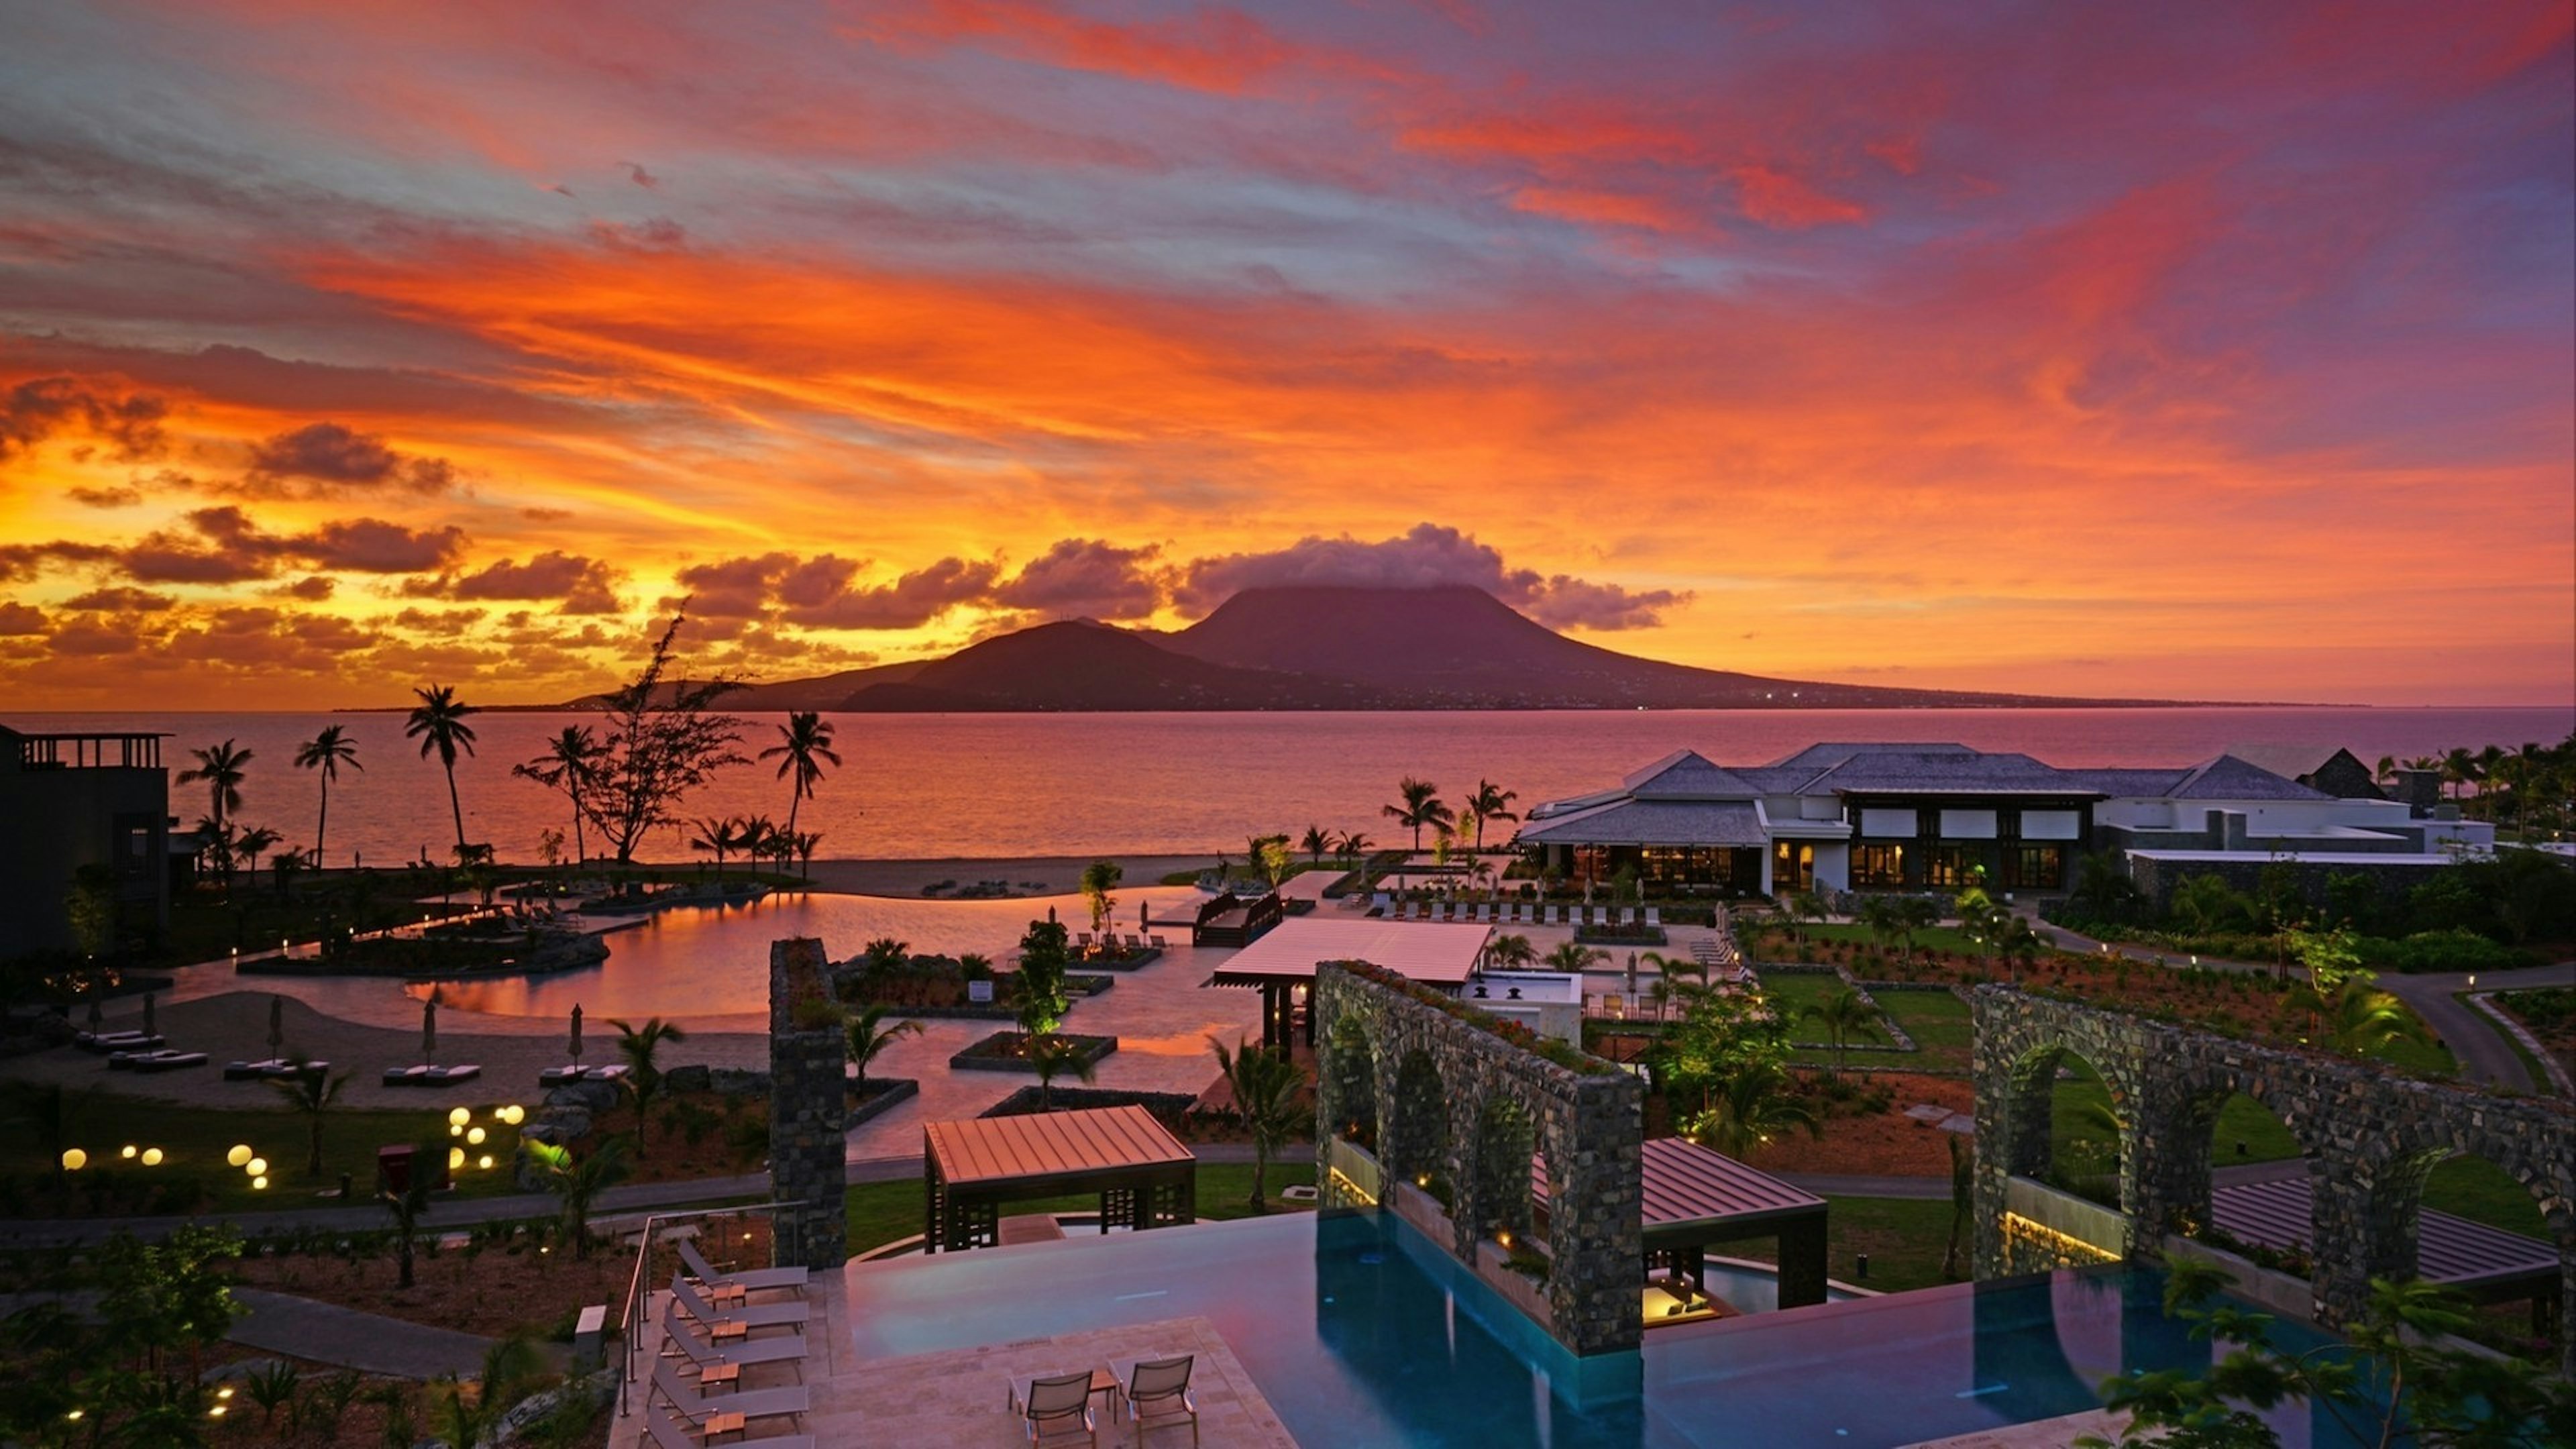 Dramatic orange sunrise over the Park Hyatt St Kitts, a luxury upscale hotel resort in Christopher Harbor, Saint Kitts